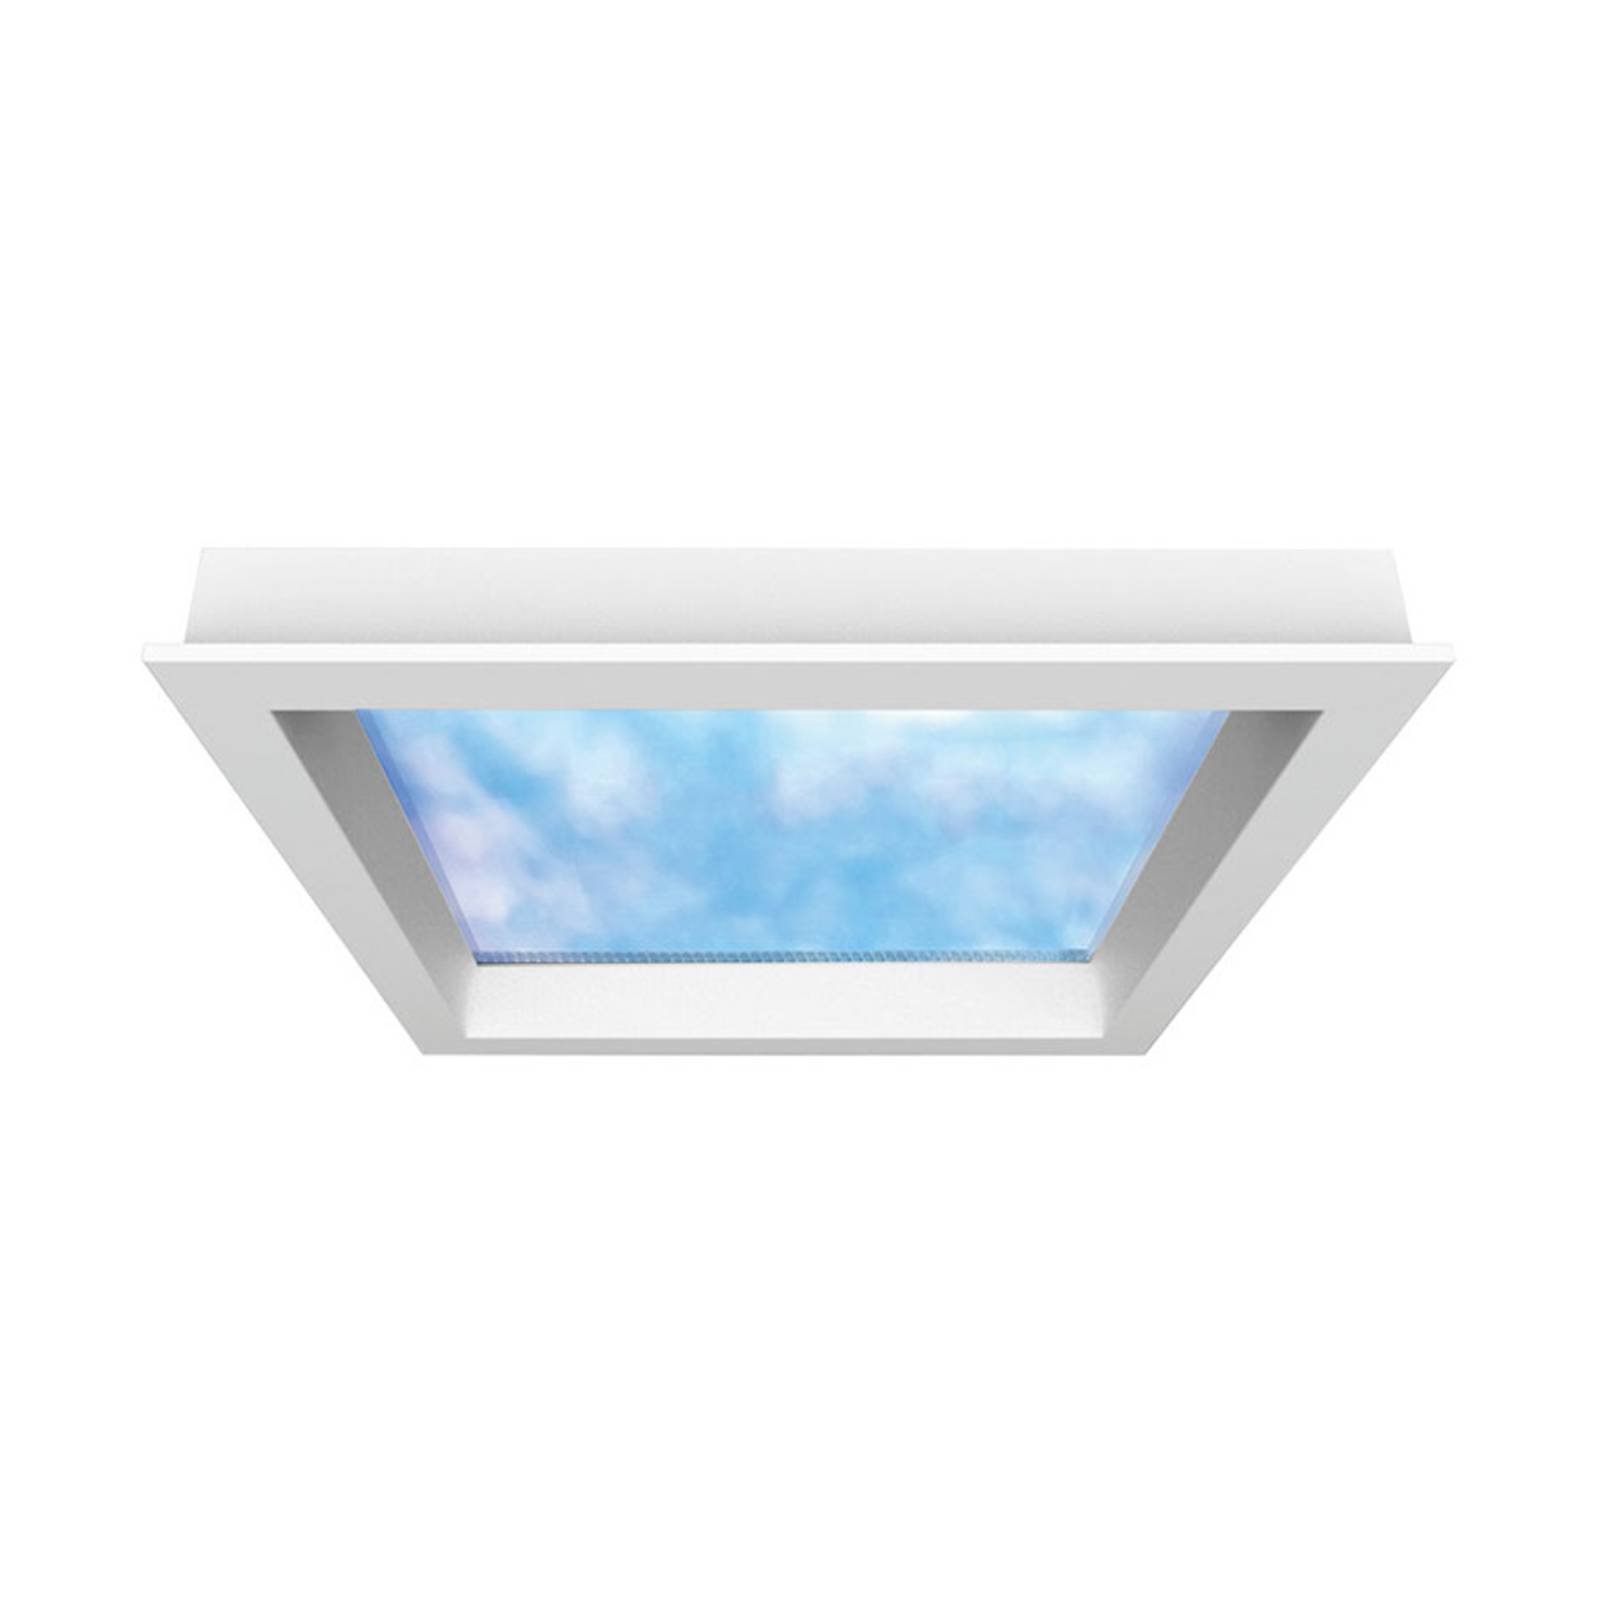 LED-Panel Sky Window 60x60cm mit Einbaurahmen von Hera